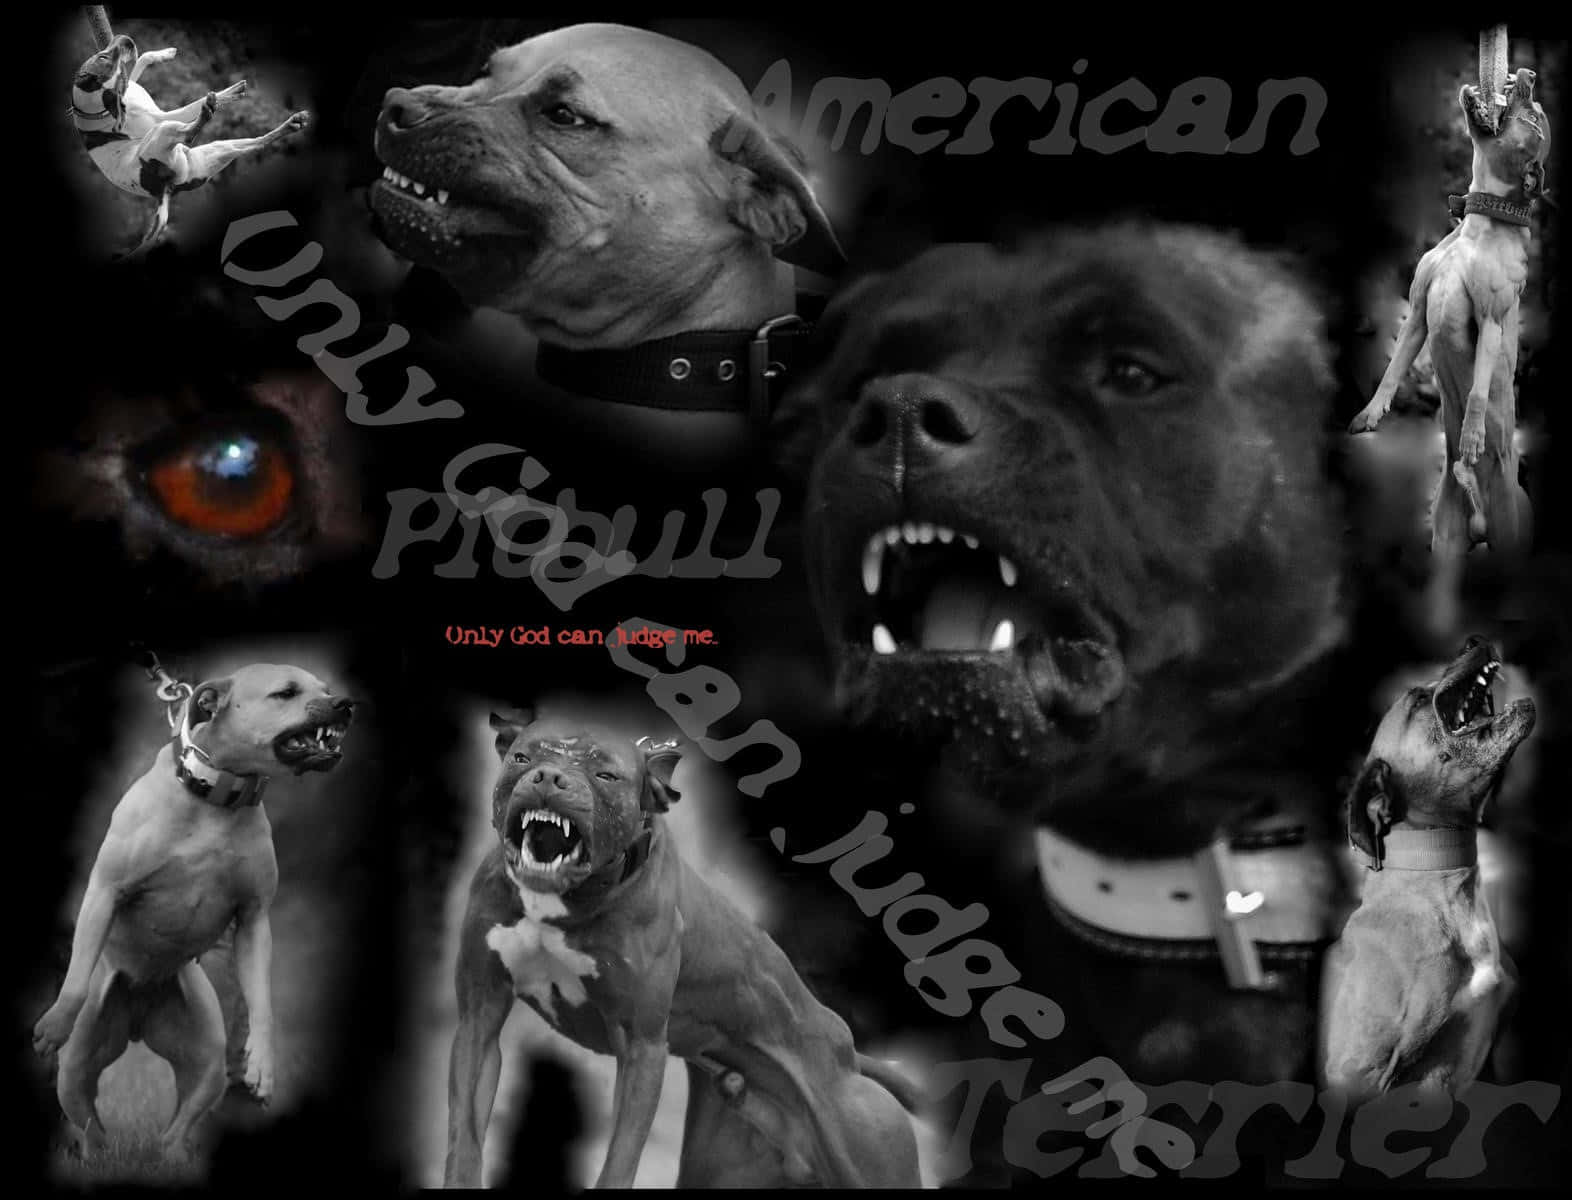 Amerikanischepitbulls - Amerikanische Pitbulls - Amerikanische Pitbulls - Amerikanische Pitbulls - Amerikanische Pitbulls - Amerikanische Pitbulls Wallpaper